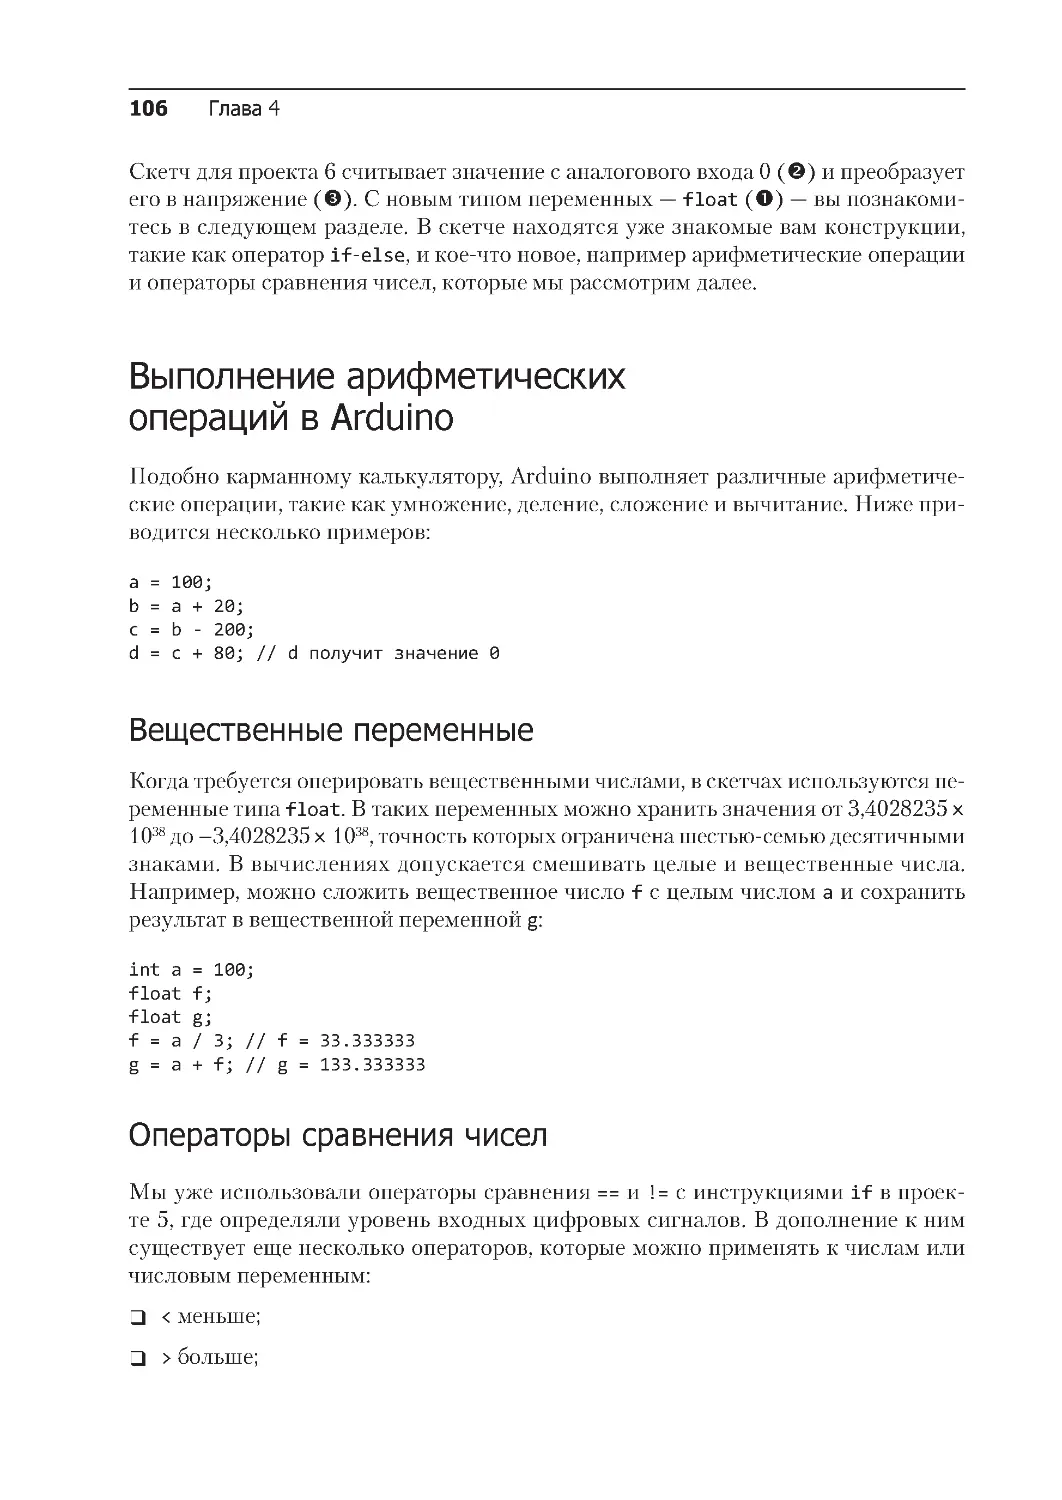 ﻿Выполнение арифметических операций в Arduin
﻿Операторы сравнения чисе